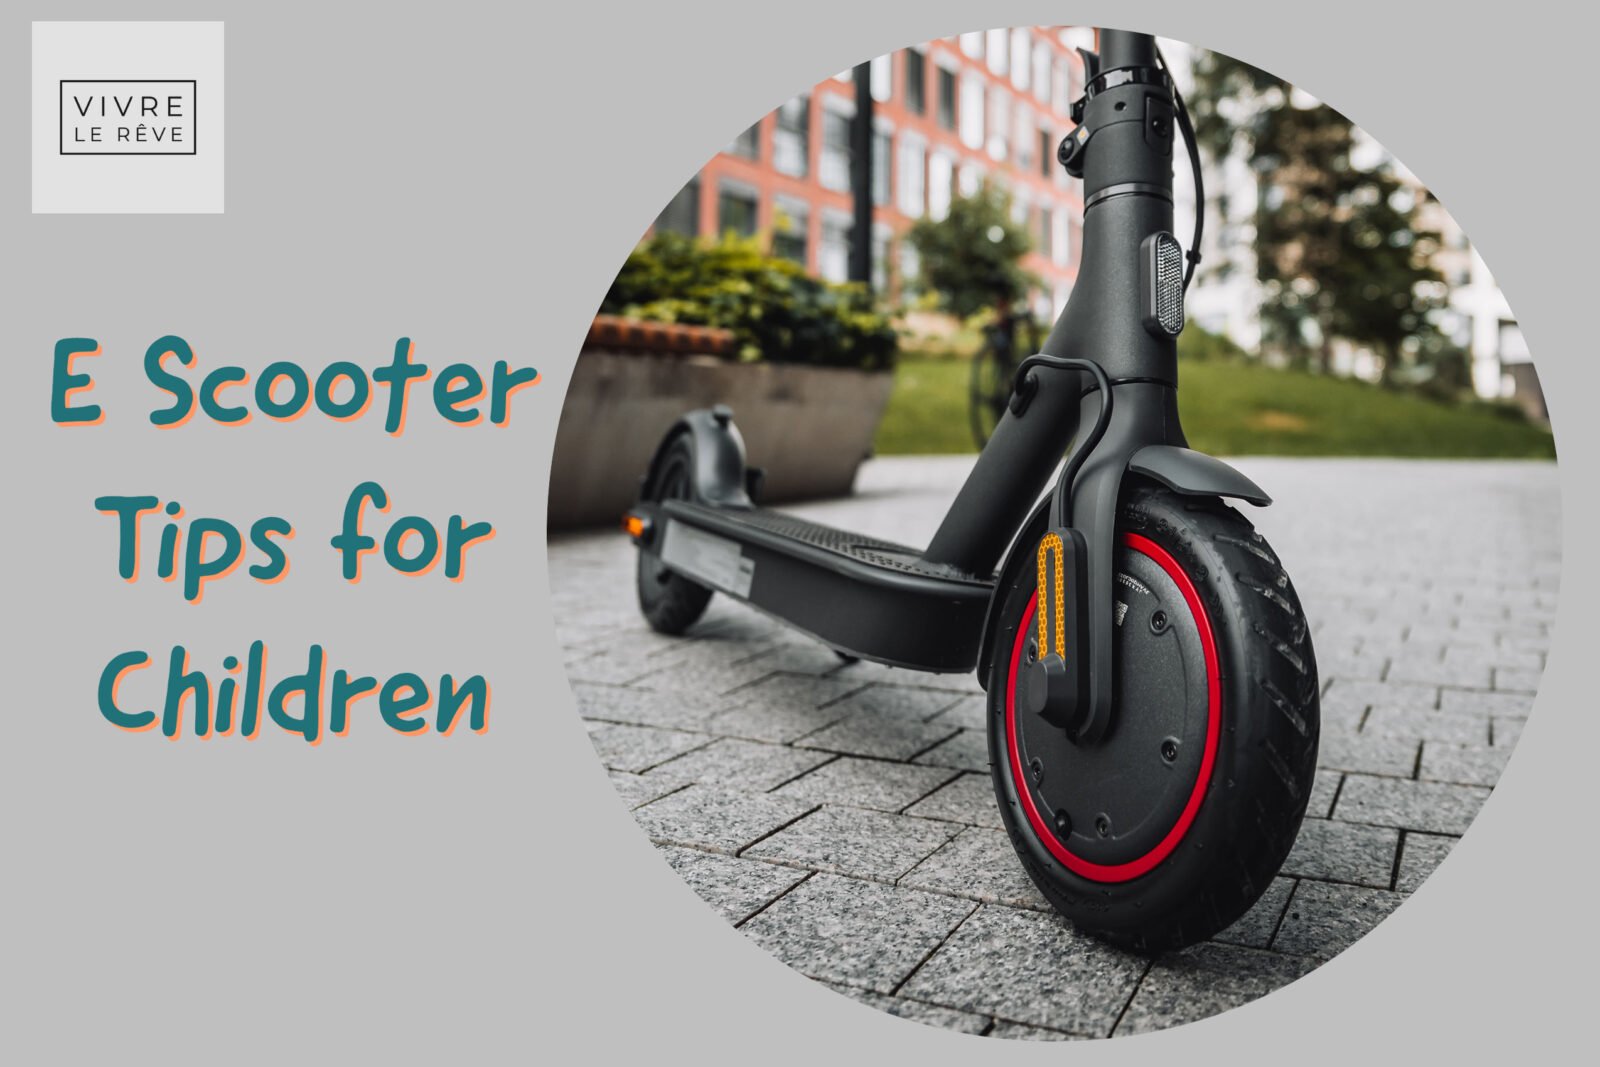 E Scooter Tips for Children